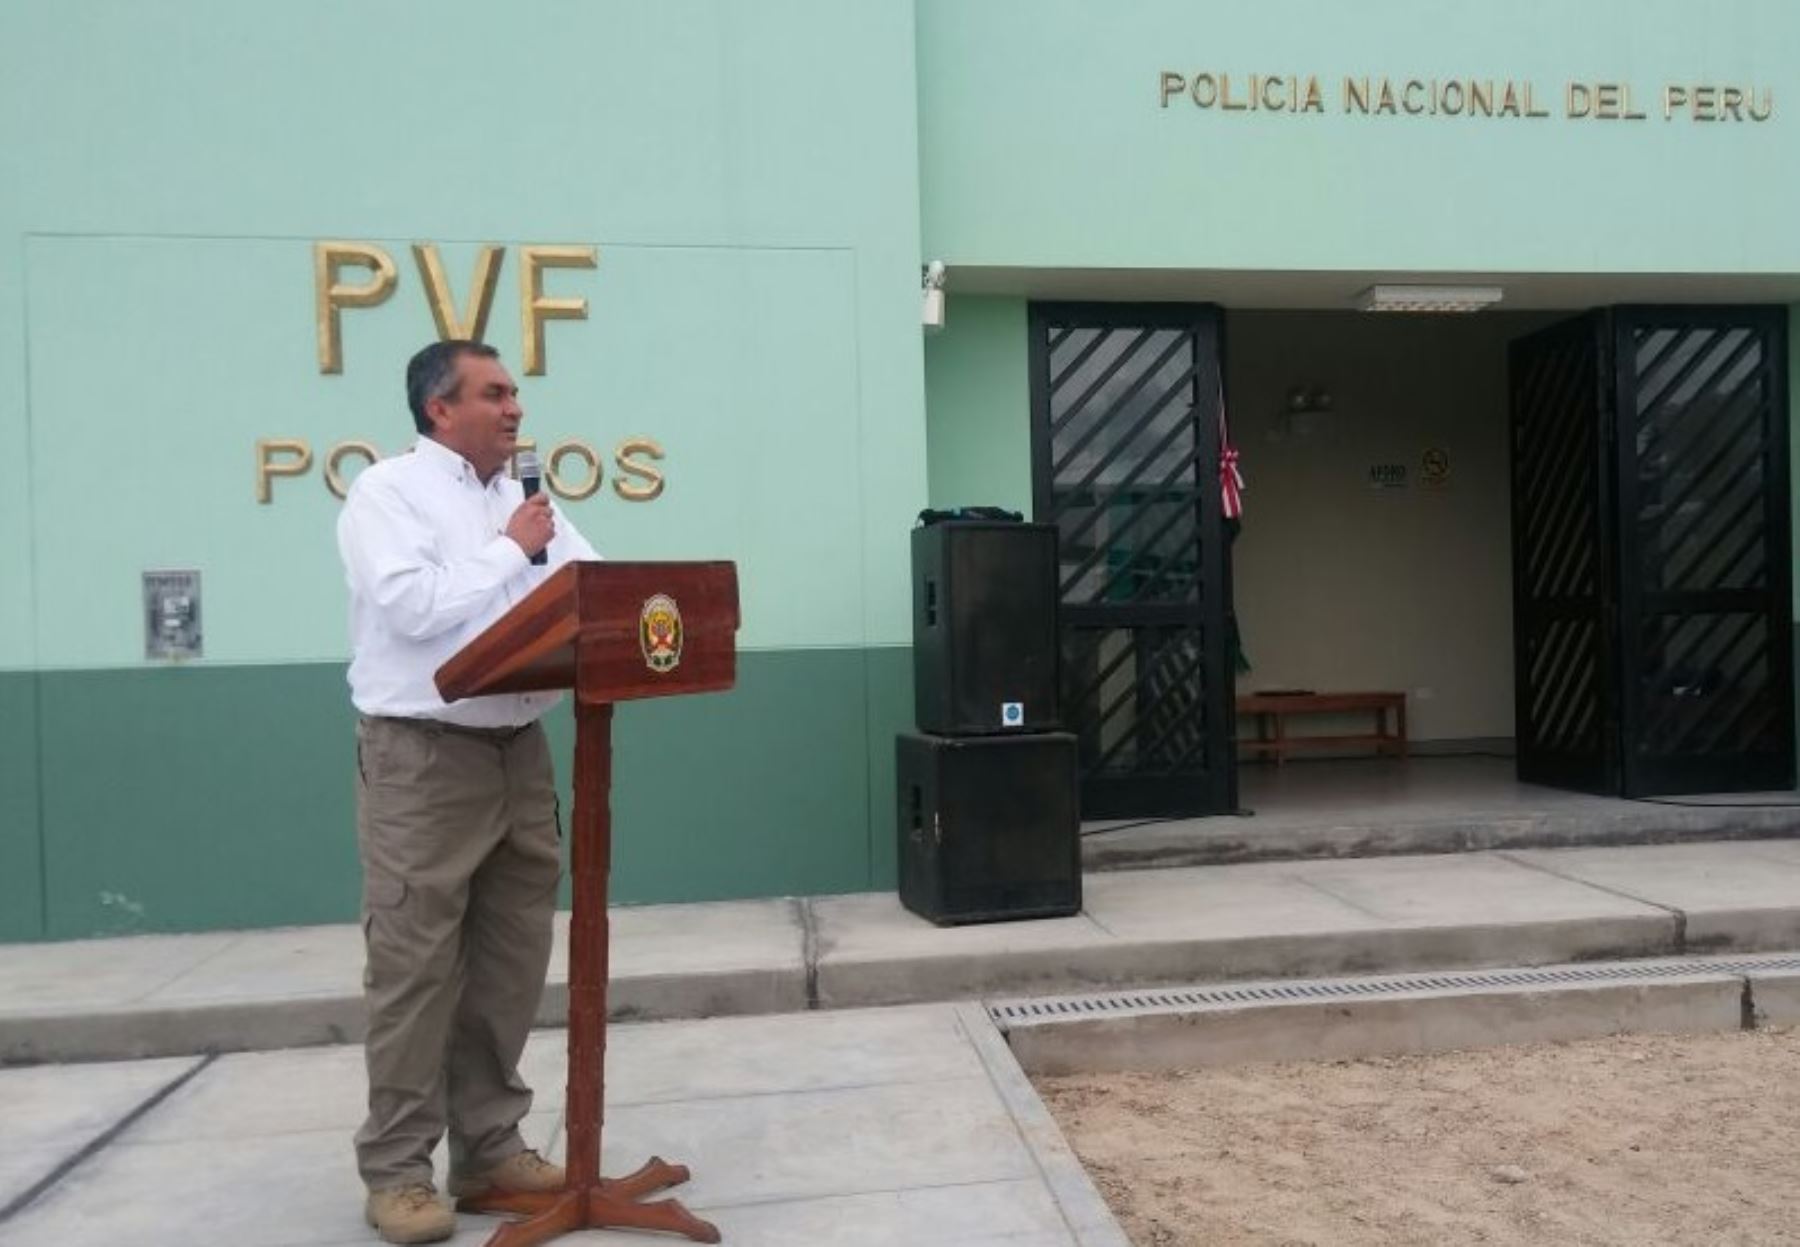 El ministro del Interior, Vicente Romero Fernández, inauguró en Tumbes dos puestos de vigilancia de frontera (PVF) que permitirán mejorar los servicios de seguridad del territorio nacional en la frontera norte del país y las condiciones de trabajo de los policías.